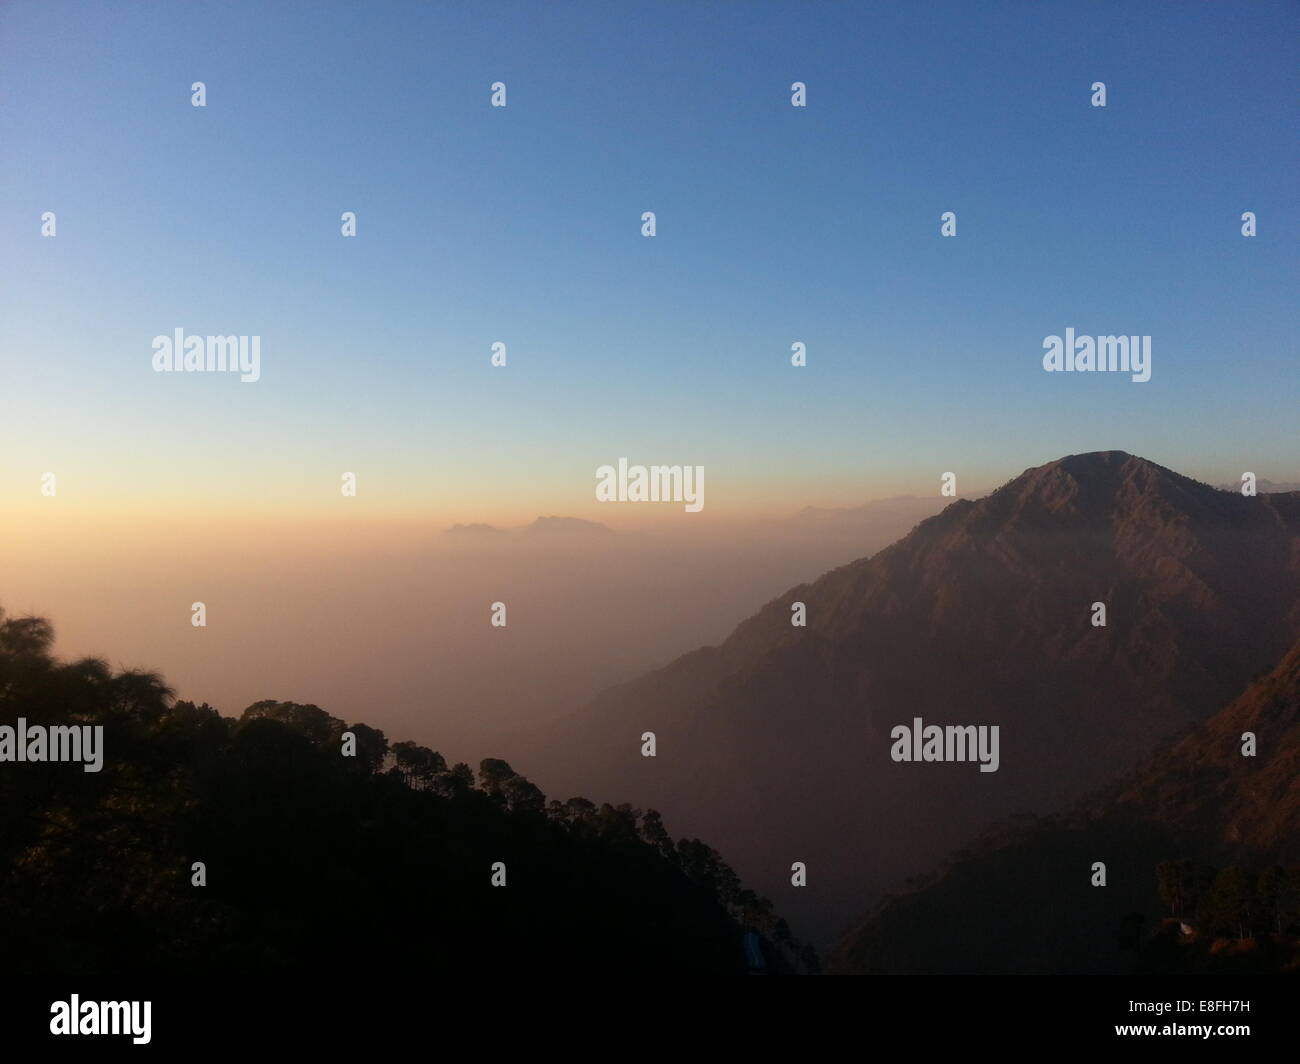 India, Katra, Jammu, Mountains at sunset Stock Photo